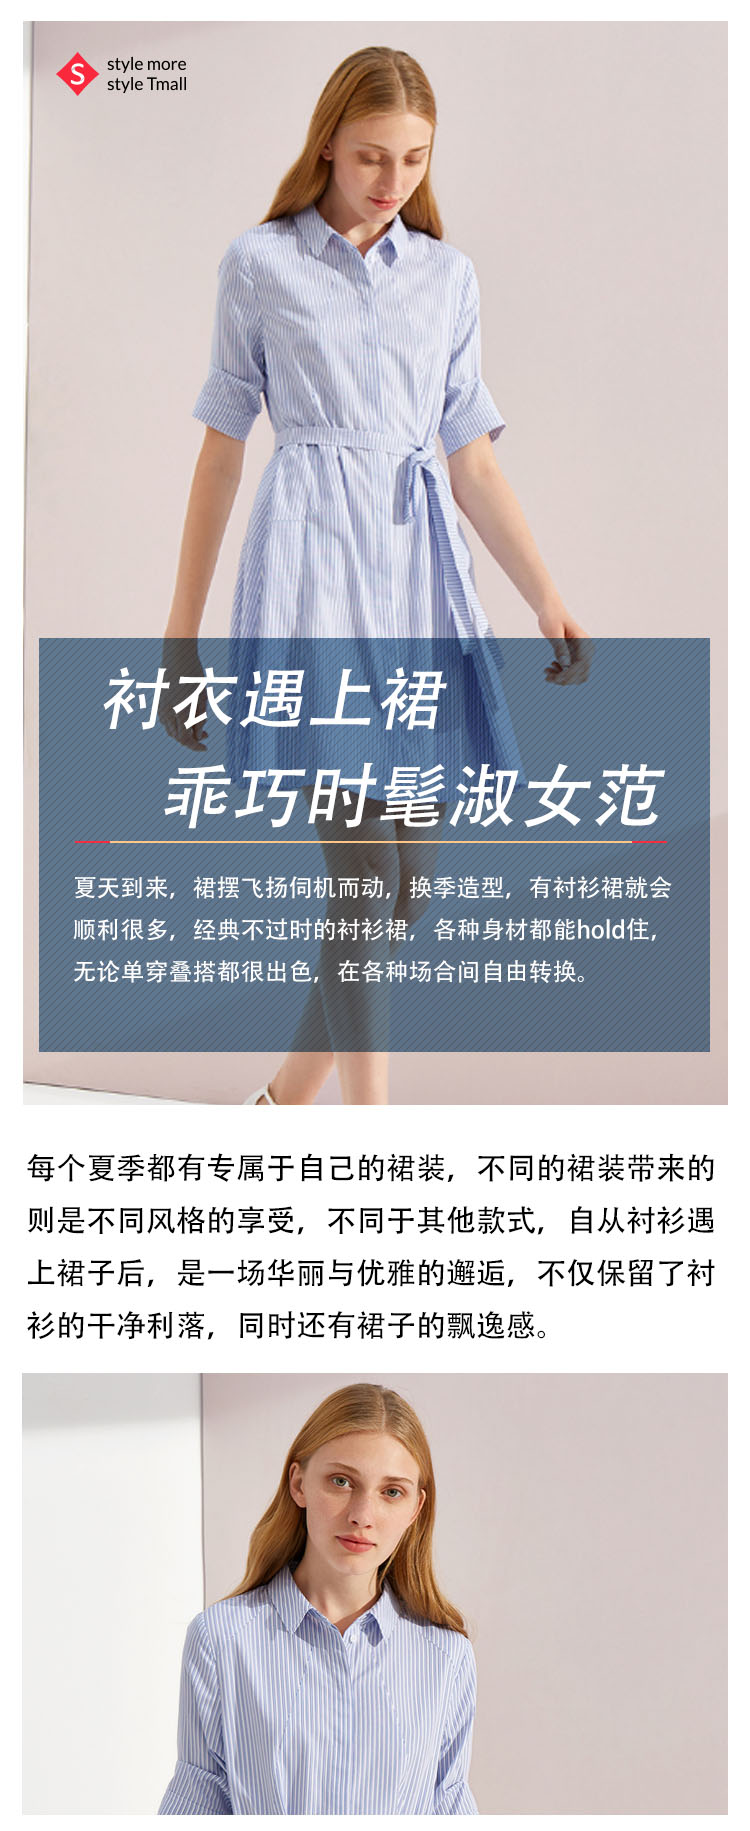 爱打扮(www.idaban.cn)，衬衫遇上裙，竟如此精妙美丽1